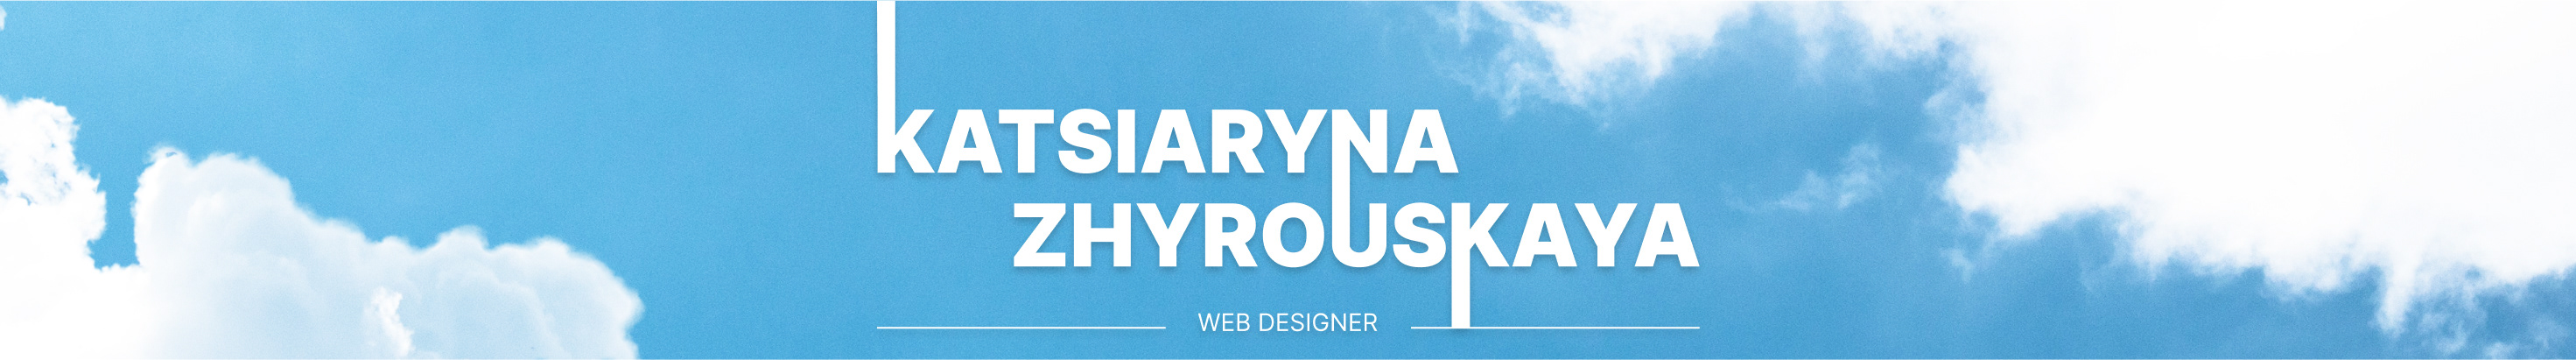 Profil-Banner von Katsiaryna Zhyrouskaya